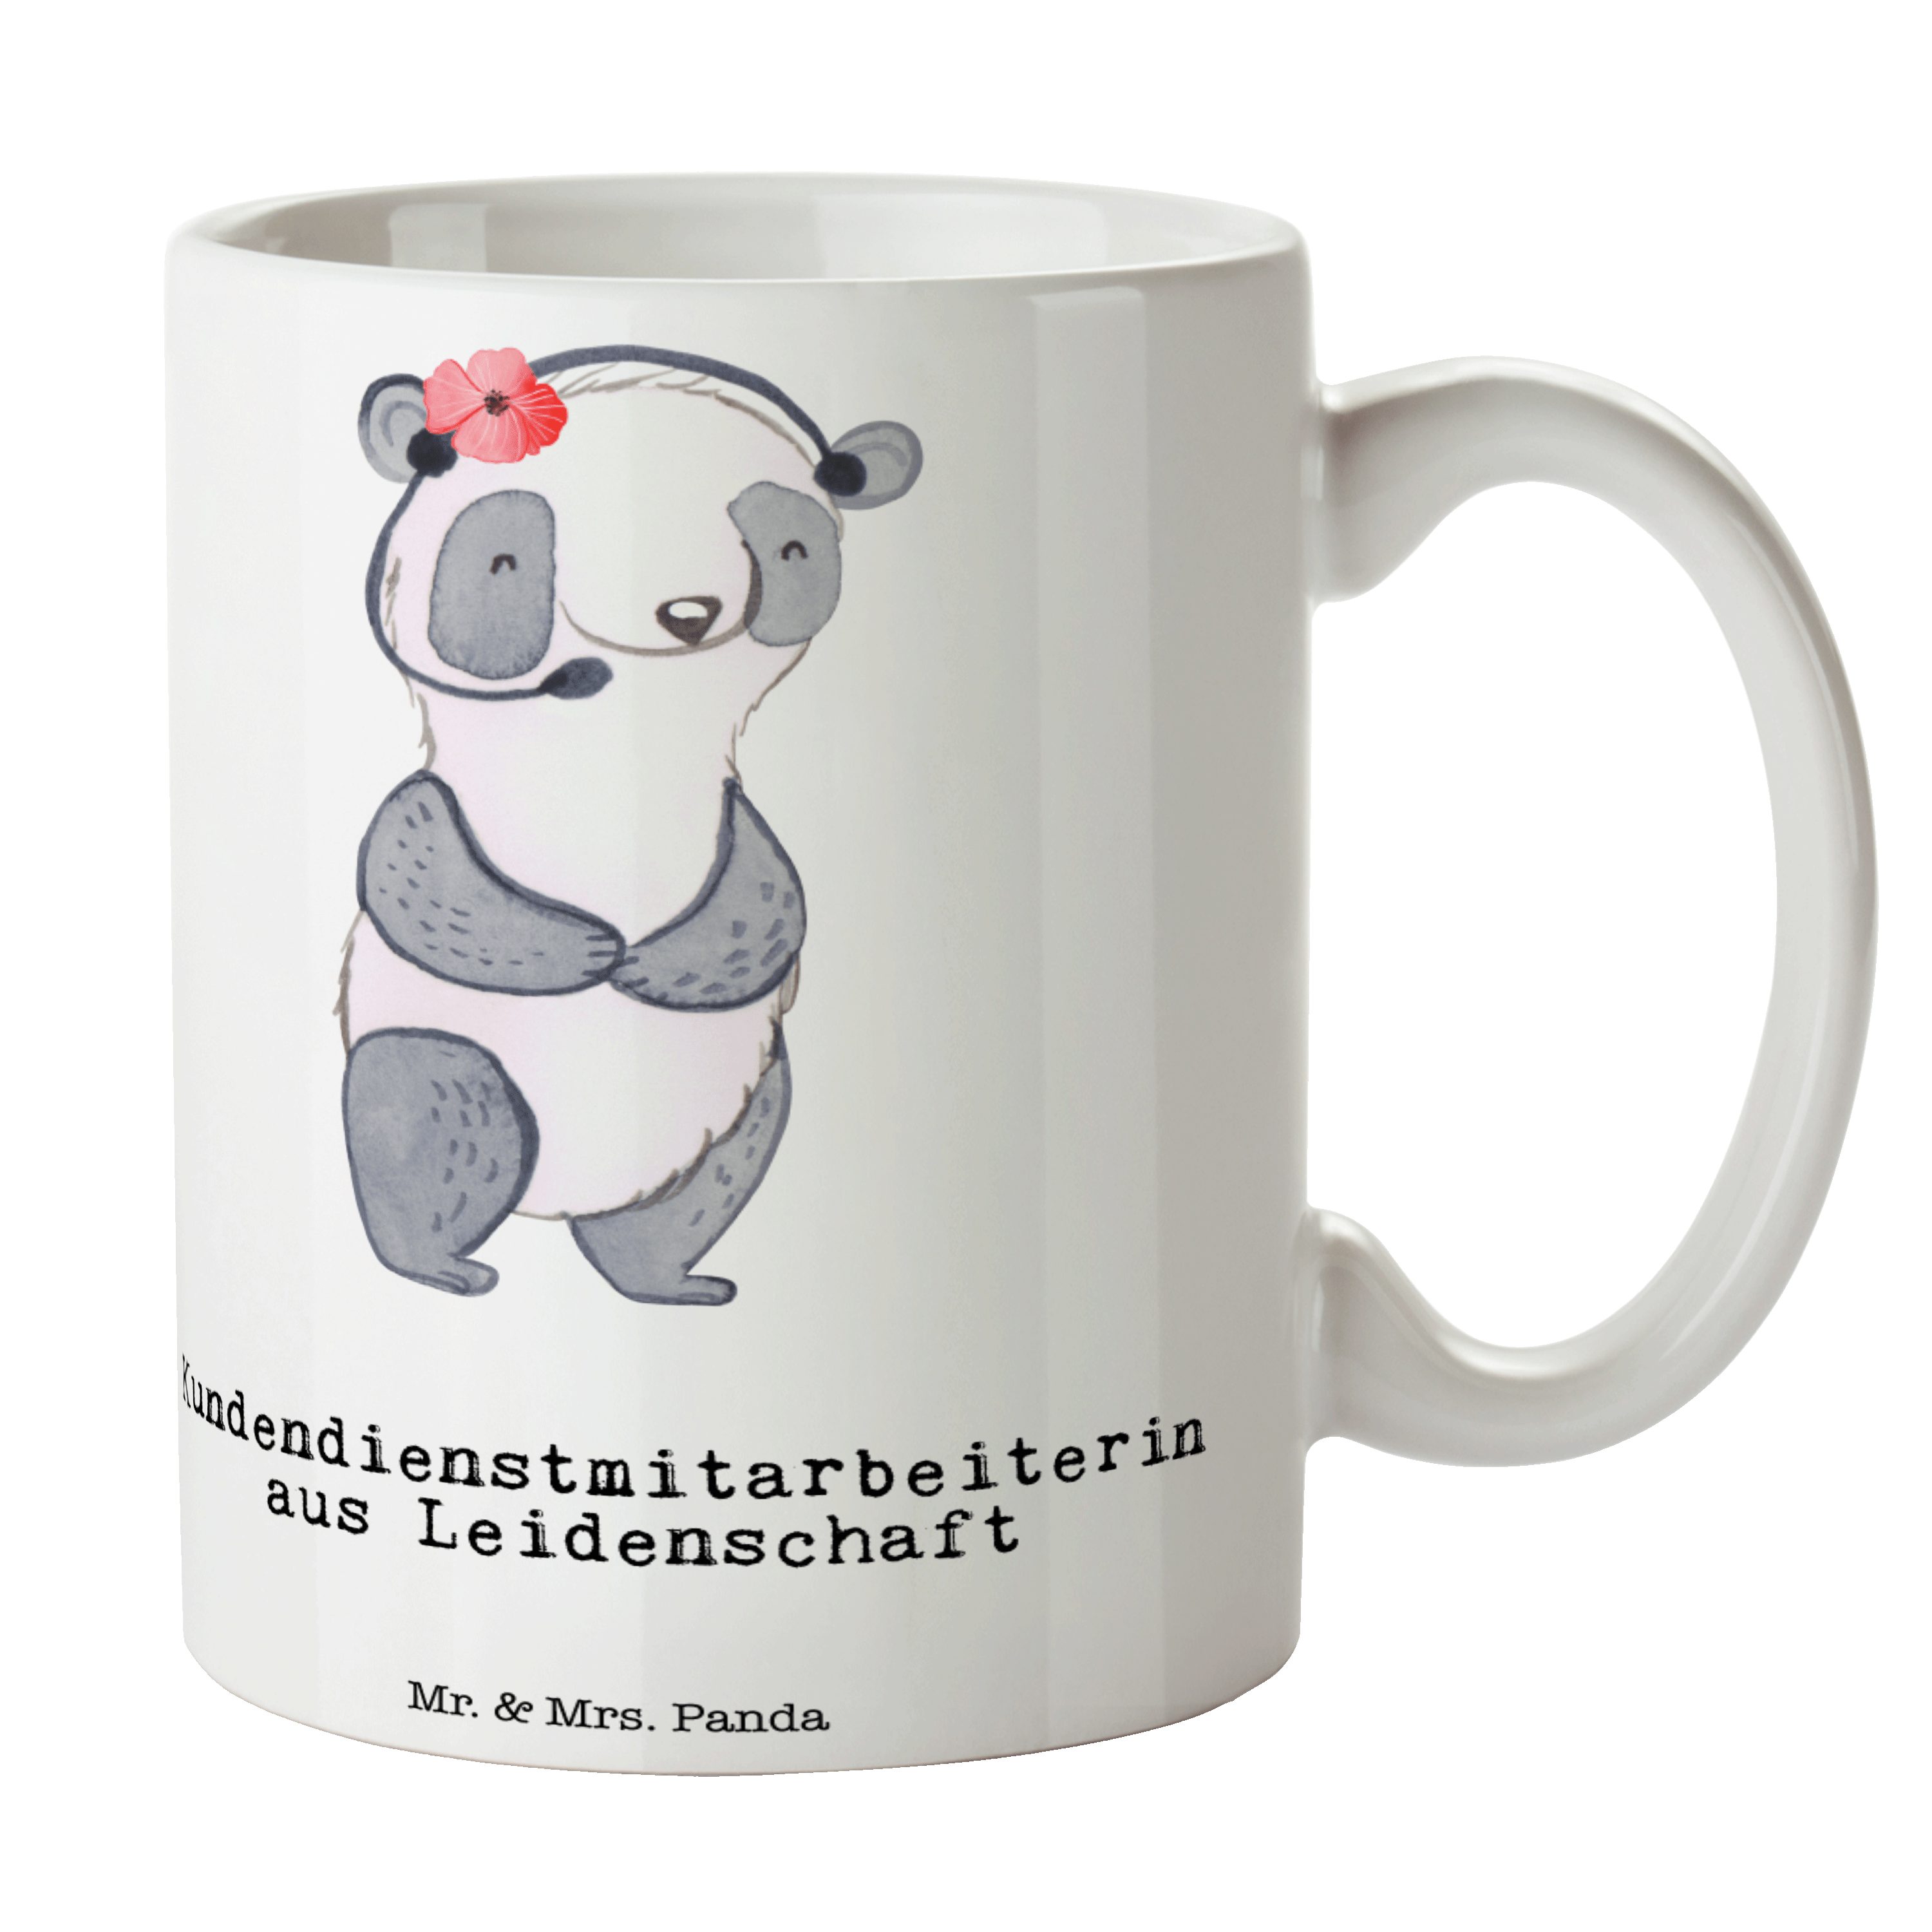 Mr. & Mrs. Panda Tasse Kundendienstmitarbeiterin Leidenschaft - Weiß - Geschenk, Tasse, back, Keramik, Exklusive Motive